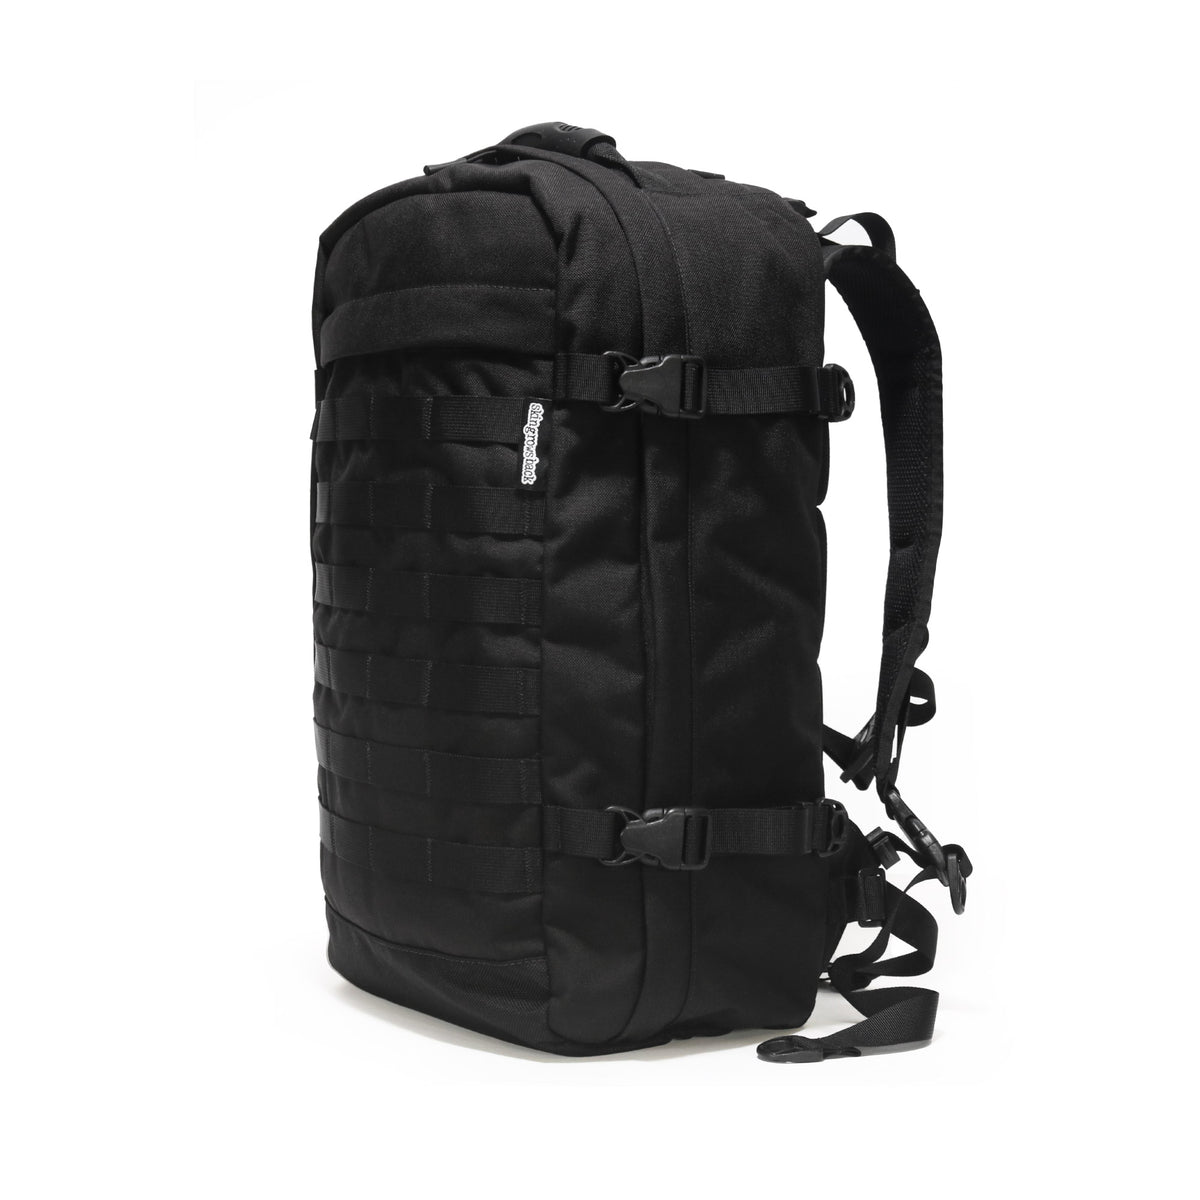 skingrowsback PAK30 30 litre backpack Black